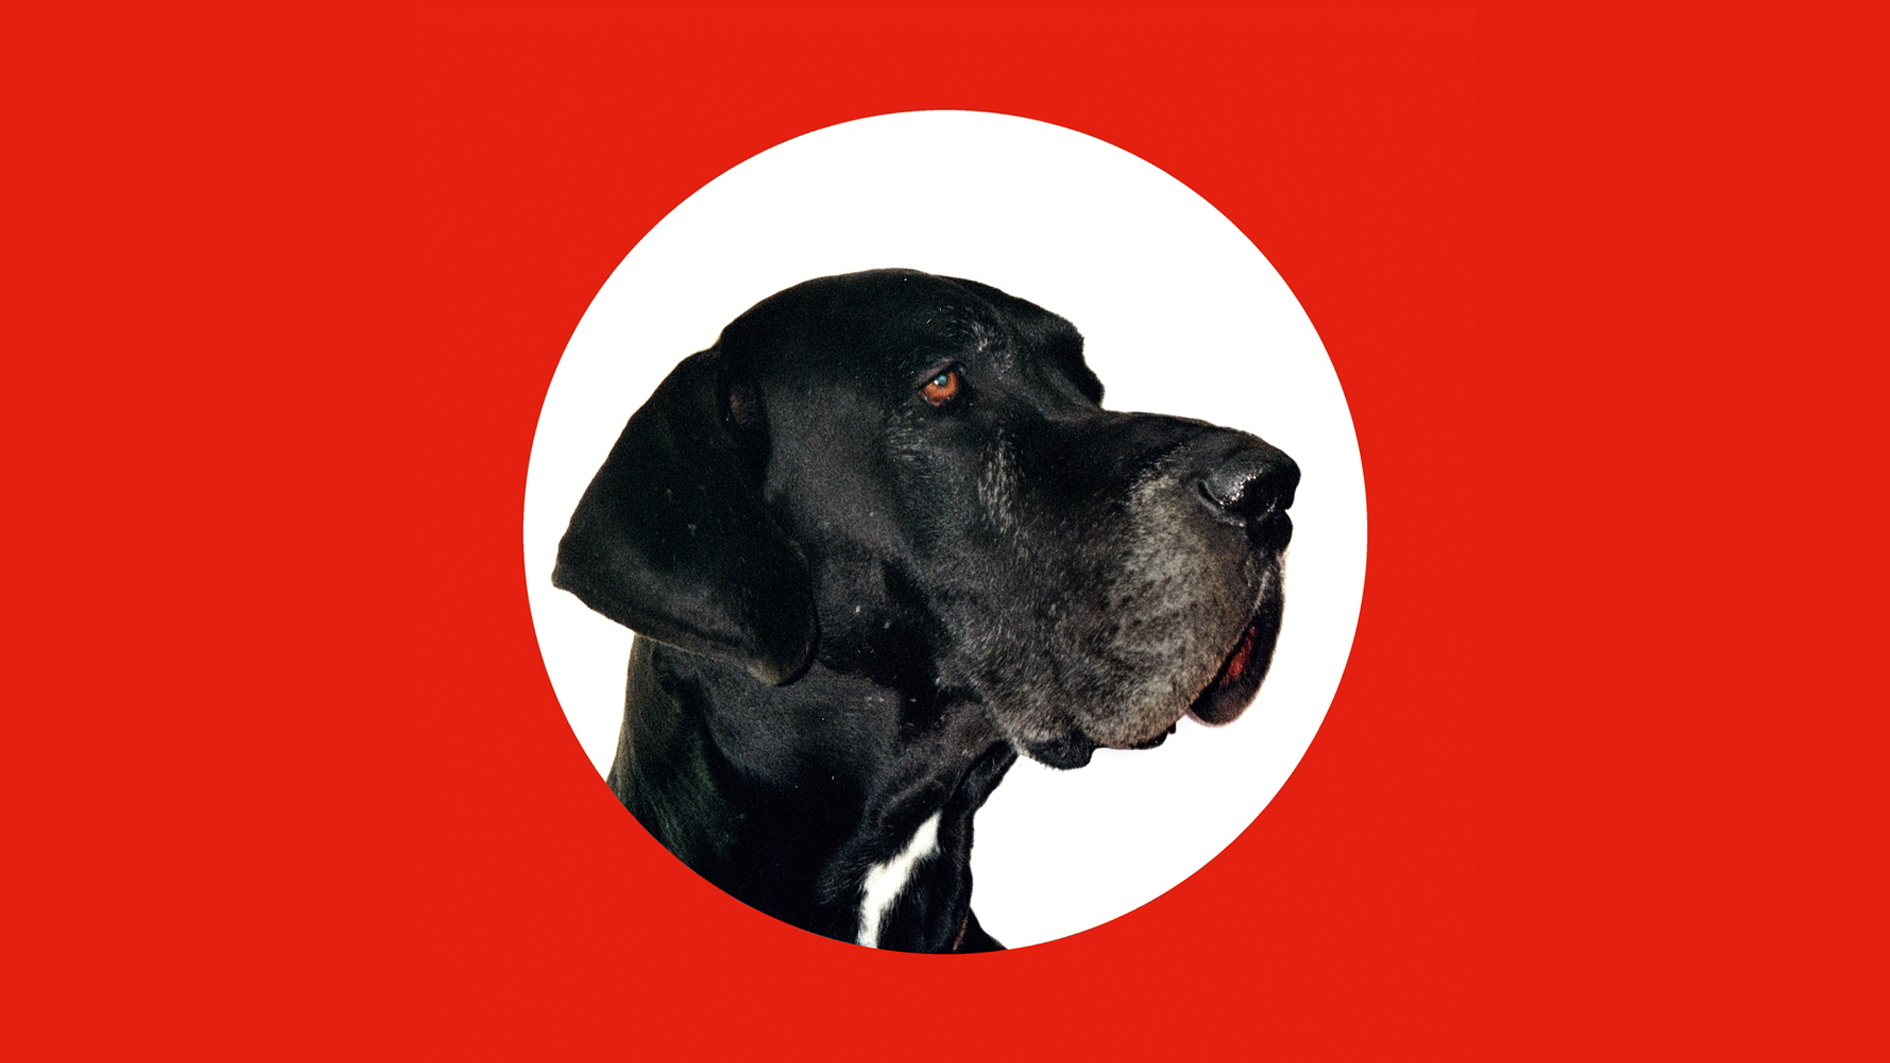 Hitler. Ein Hundeleben. Das Titelmotiv der Ausstellung zeigt ein Porträt der Dogge "Hitler" in einem weißen Kreis auf rotem Hintergrund